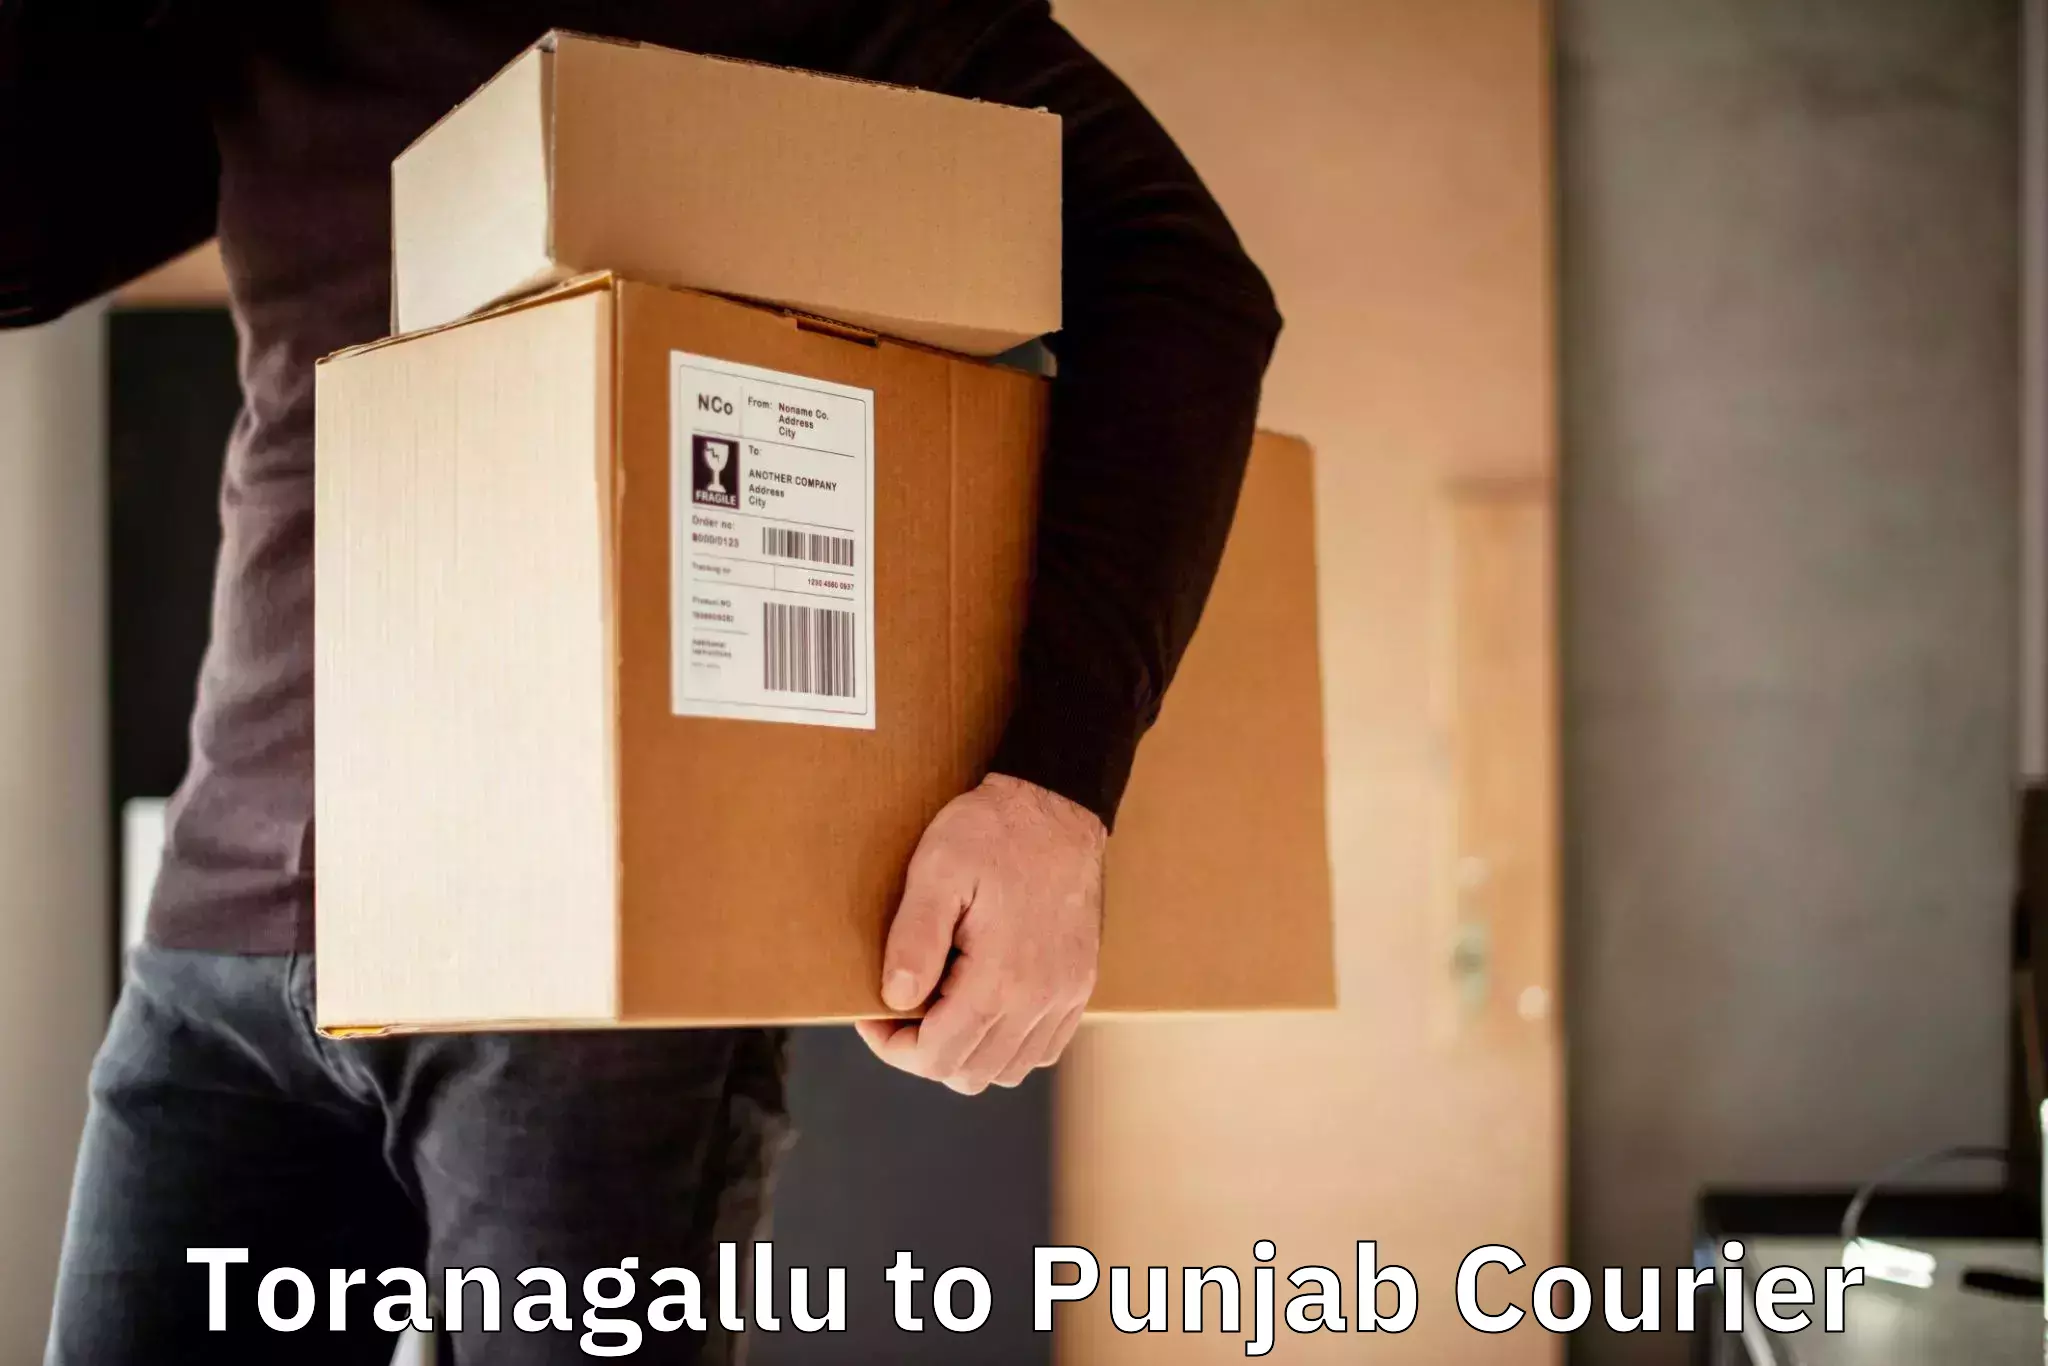 Urgent courier needs Toranagallu to Jhunir